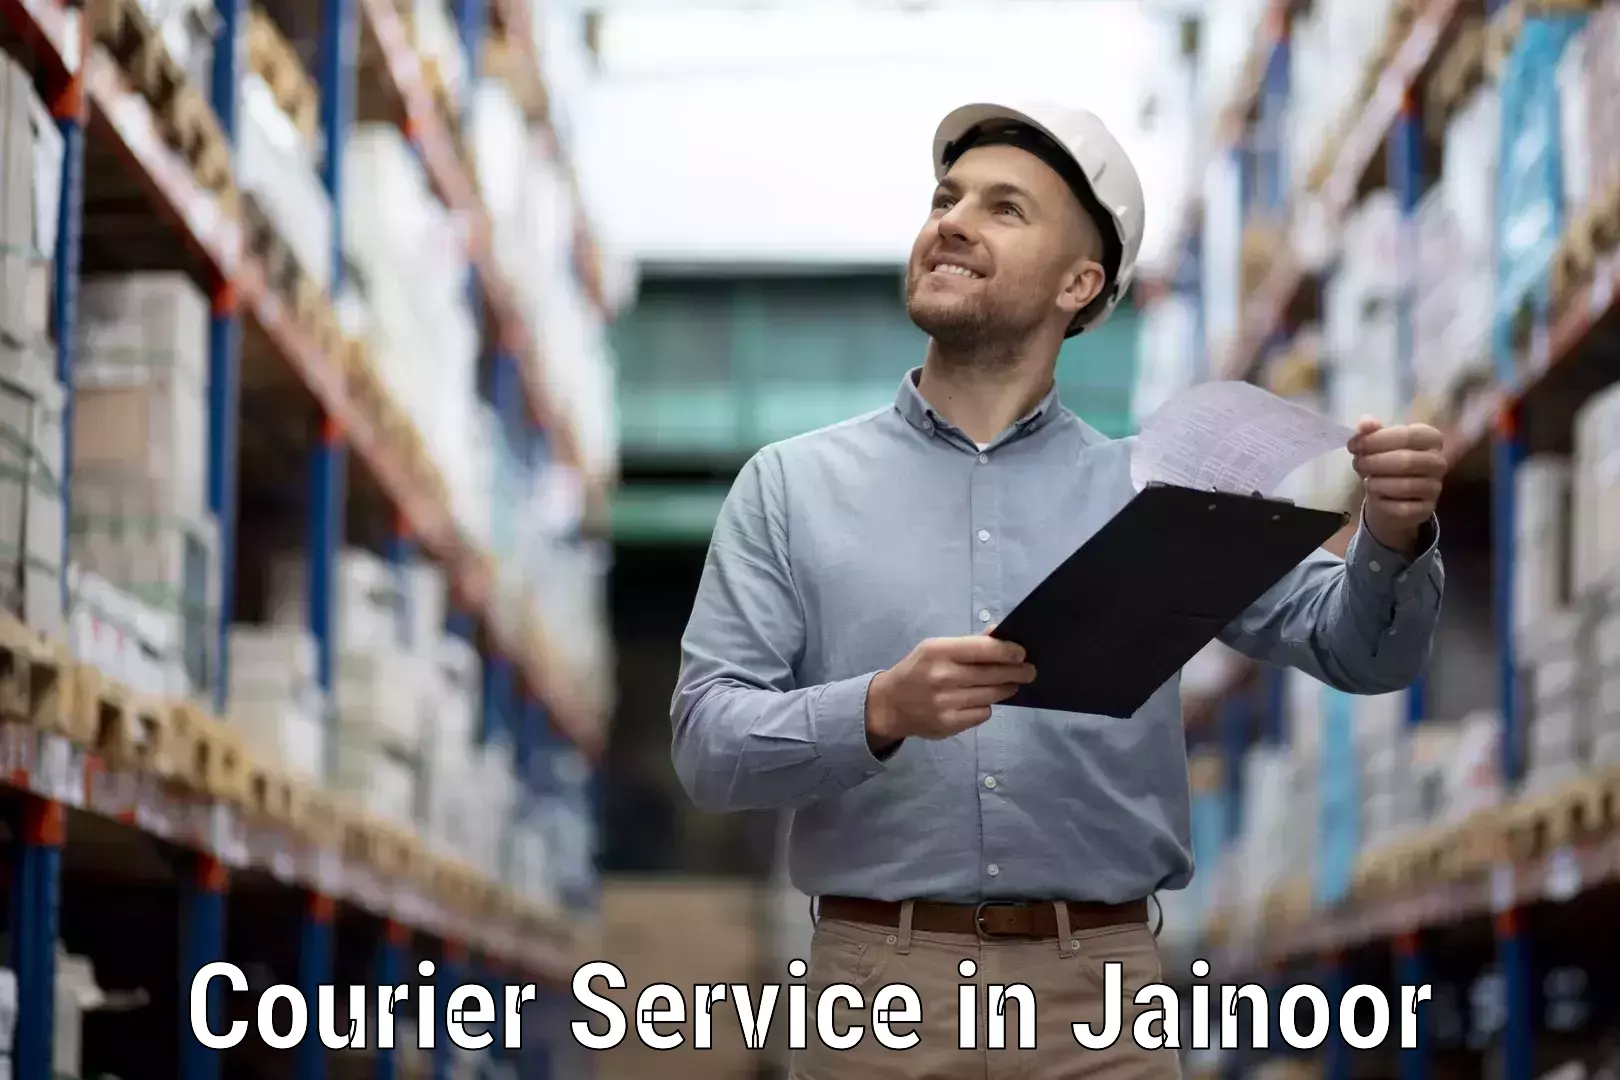 Efficient cargo handling in Jainoor